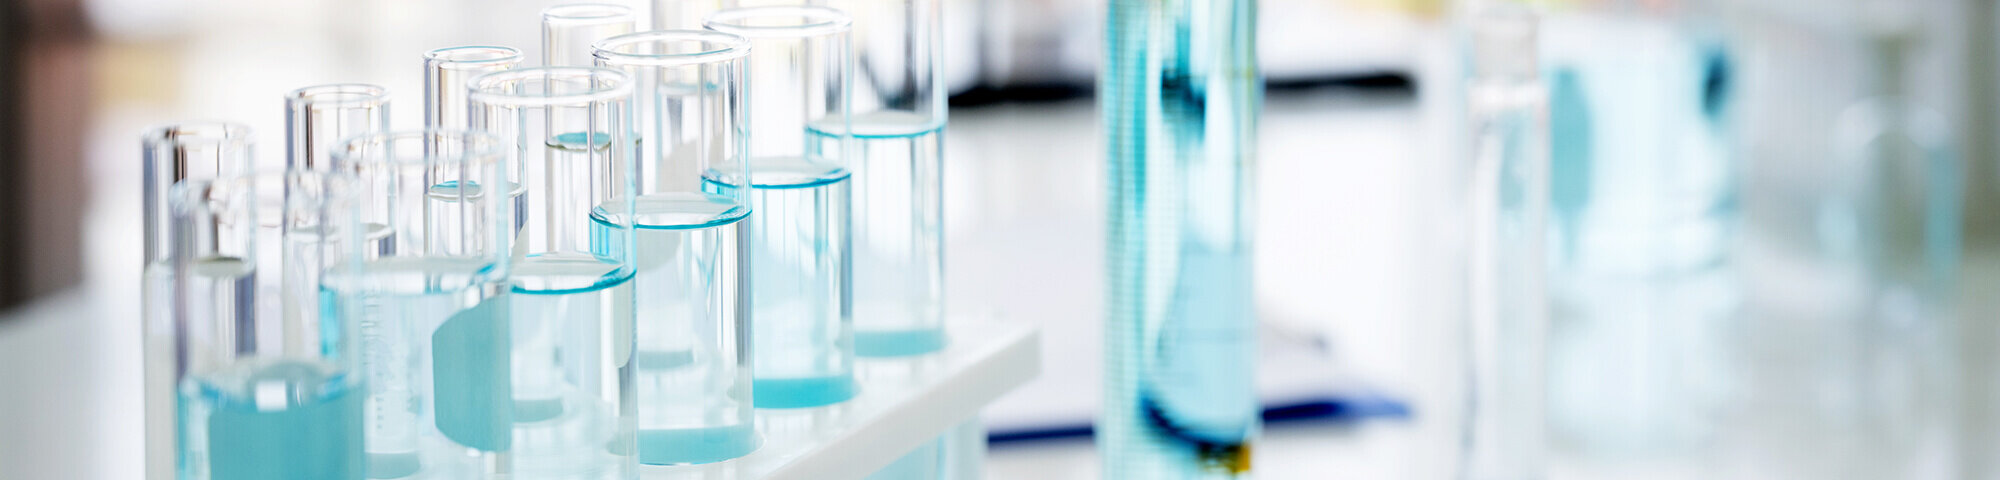 Reagenzgläser mit hellblauer Flüssigkeit gefüllt im Labor